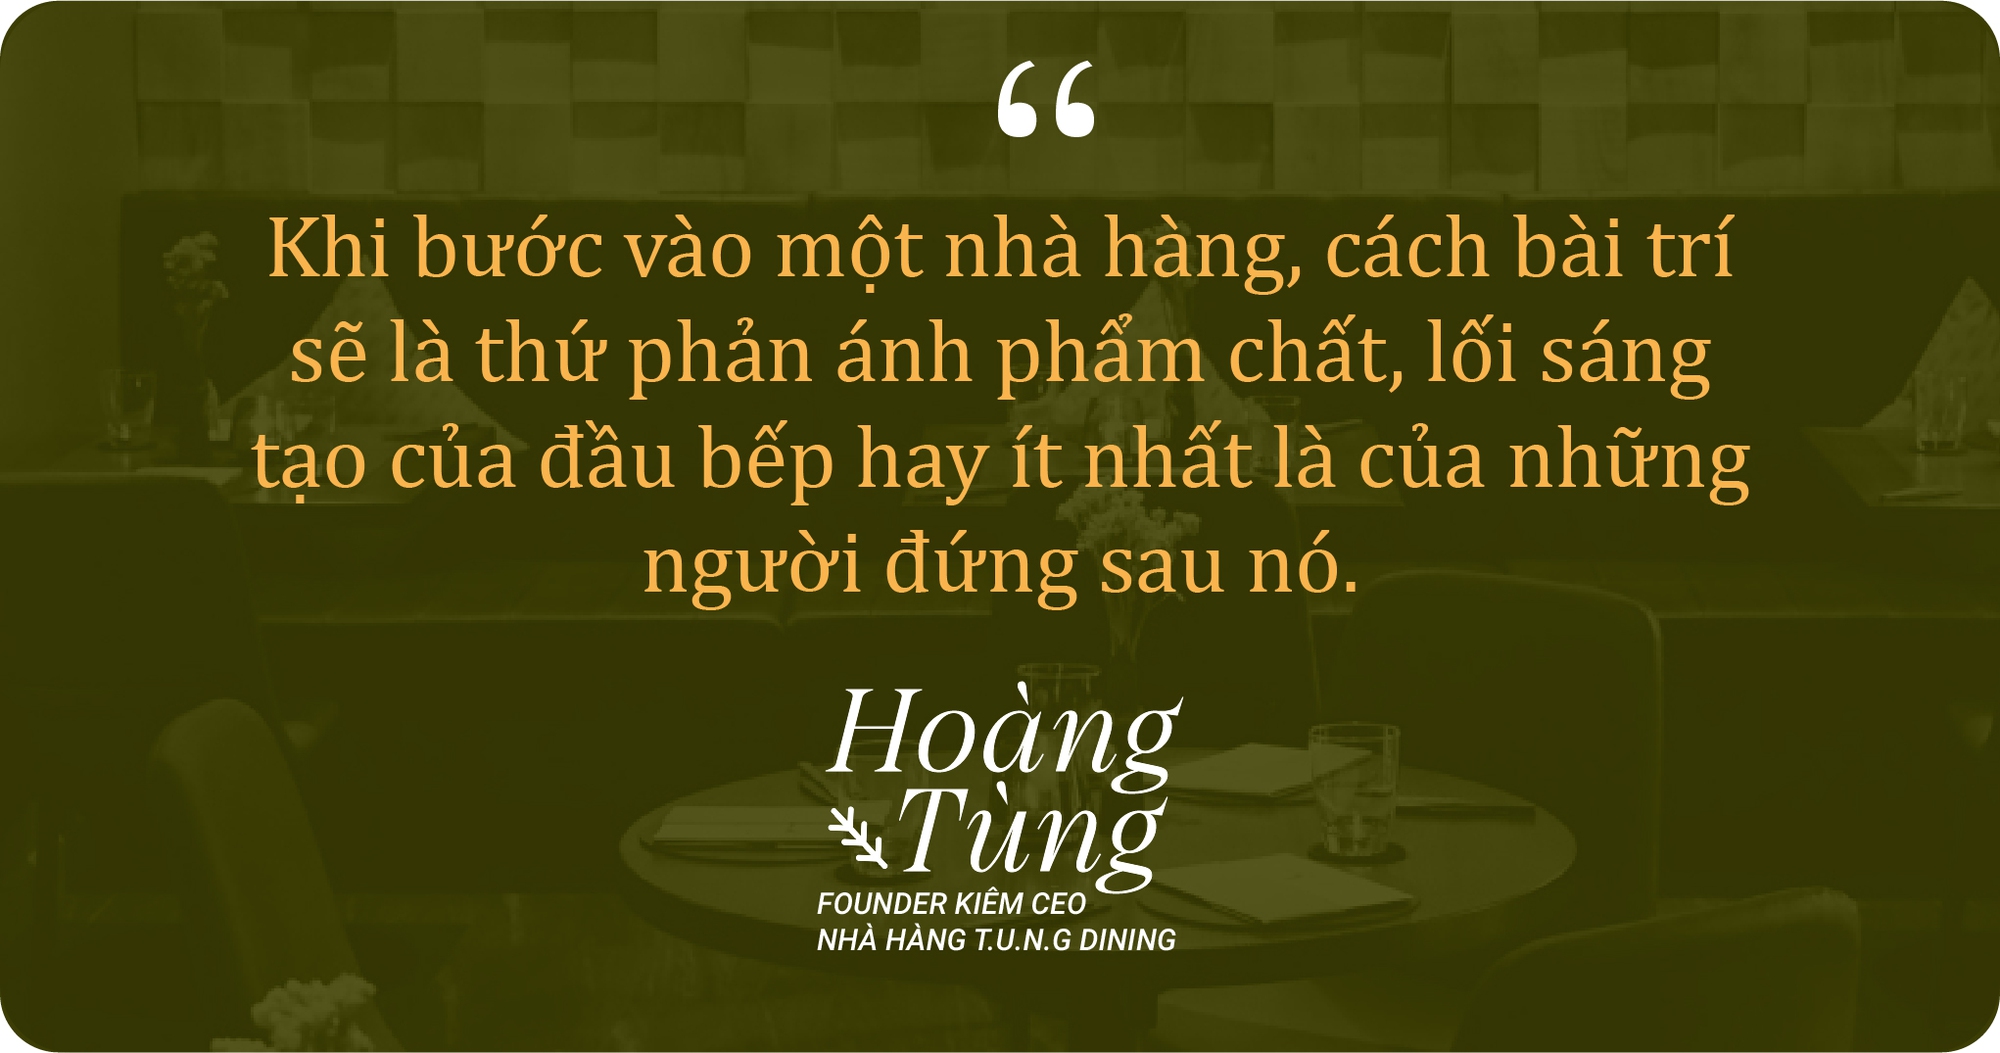 Tùng Dining: Tuổi trẻ làm việc không công một ngày 20 tiếng ở Bắc Âu, về Việt Nam mở nhà hàng có giá đắt hơn khách sạn 5 sao, được bình chọn vào top 100 tốt nhất Châu Á - Ảnh 6.